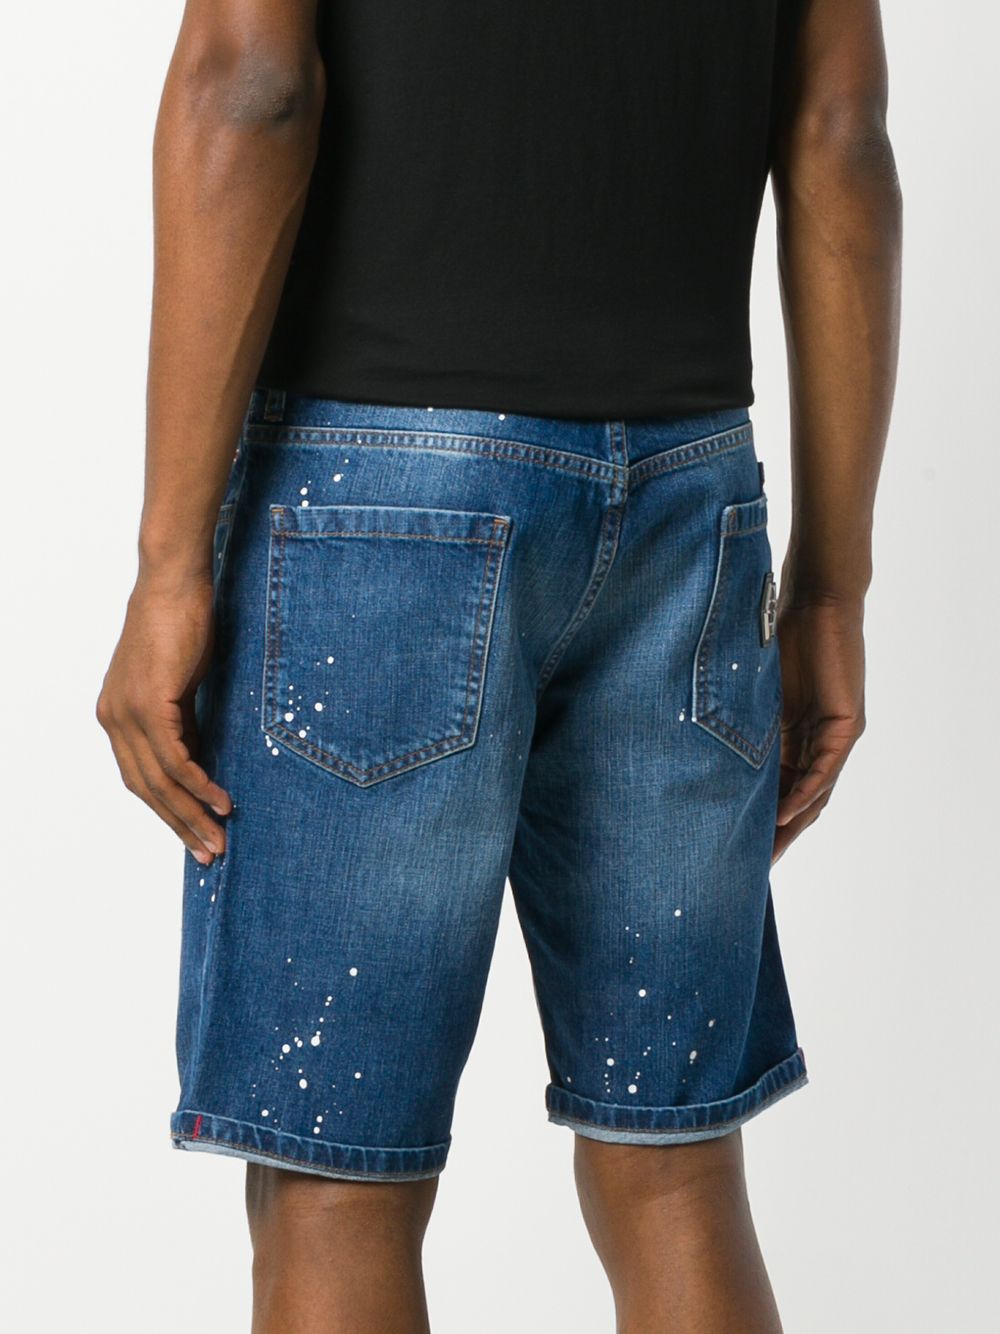 фото Philipp plein джинсовые шорты с потертой отделкой